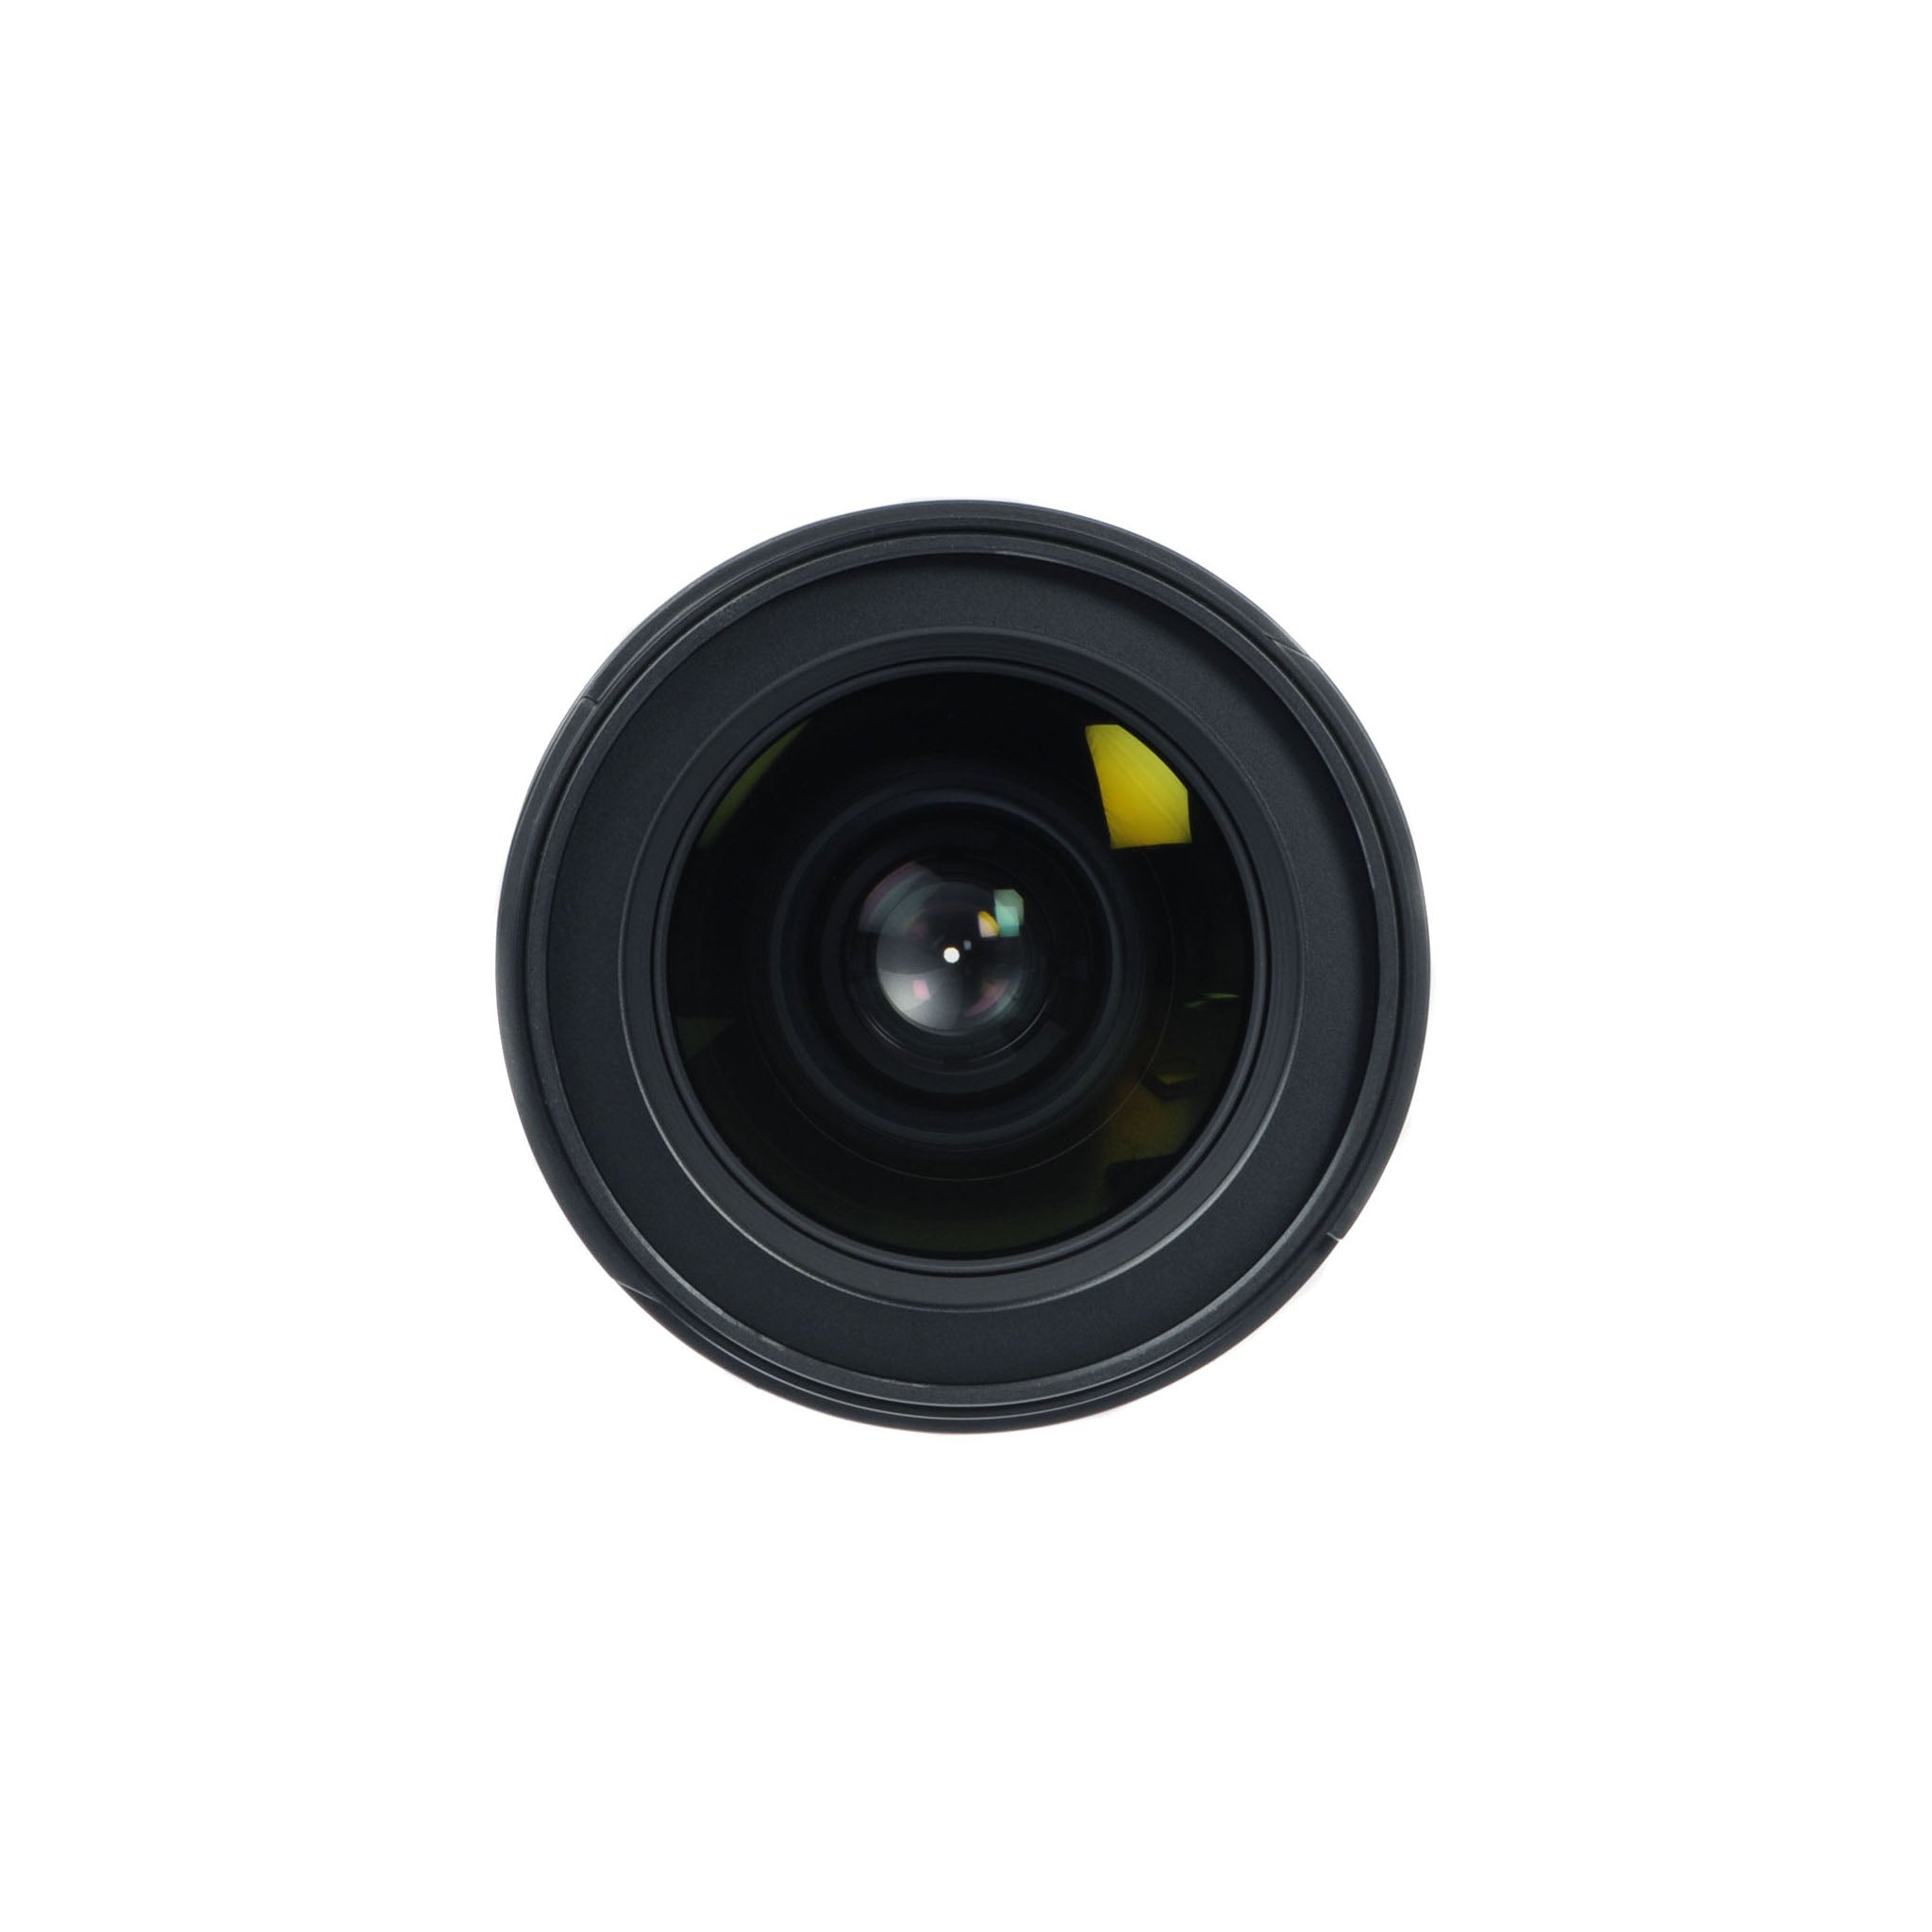 Nikon AF-S 17-55mm F2.8G ED-IF DX